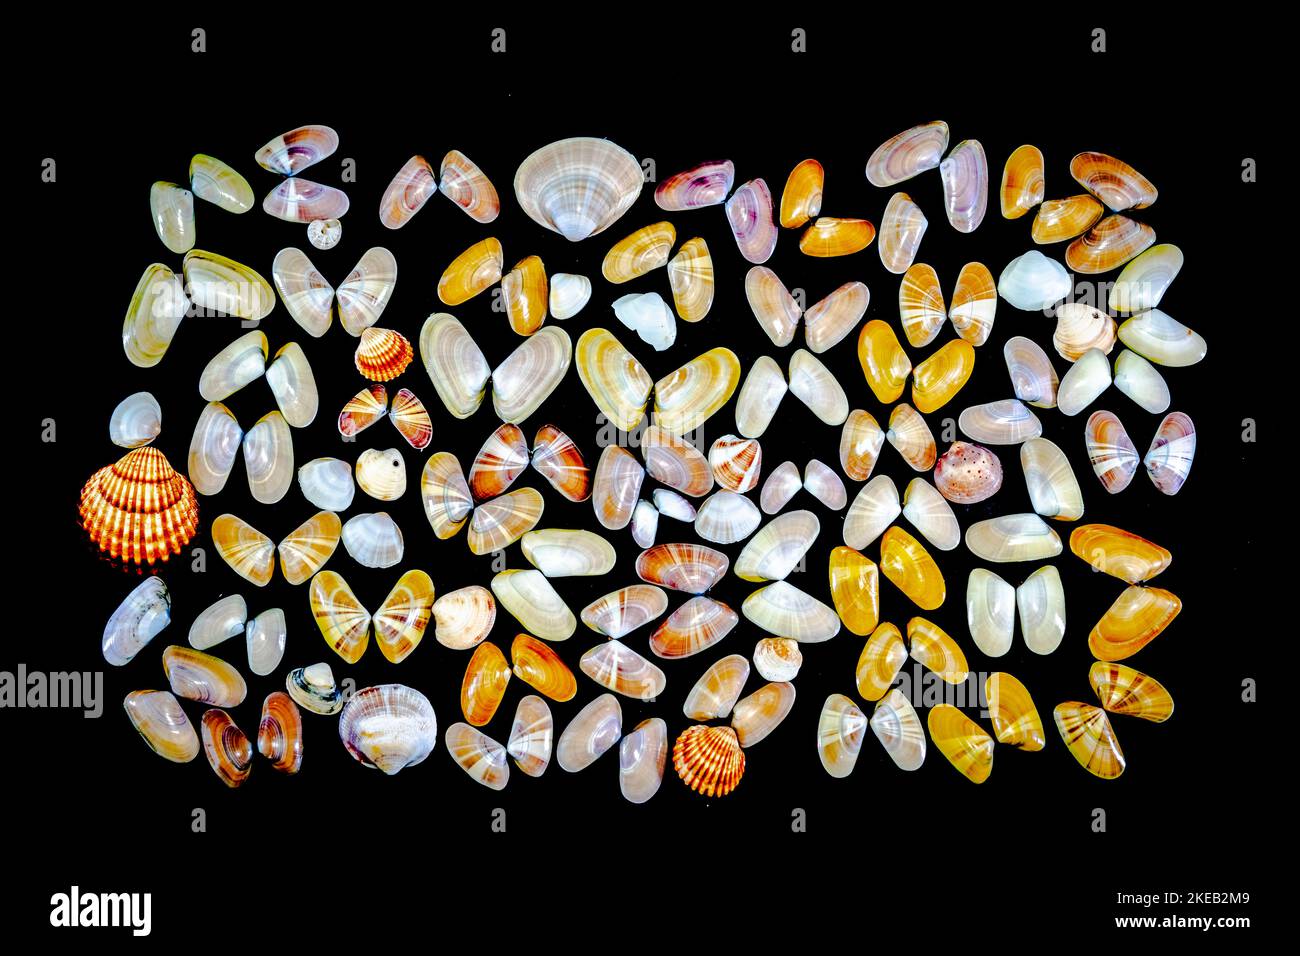 Collection de mollusques Donax variabilis ou coquina de palourdes d'eau salée coquillages ouverts et coquillages. Macro-photographie dans un arrière-plan sombre d'une variété de dif Banque D'Images